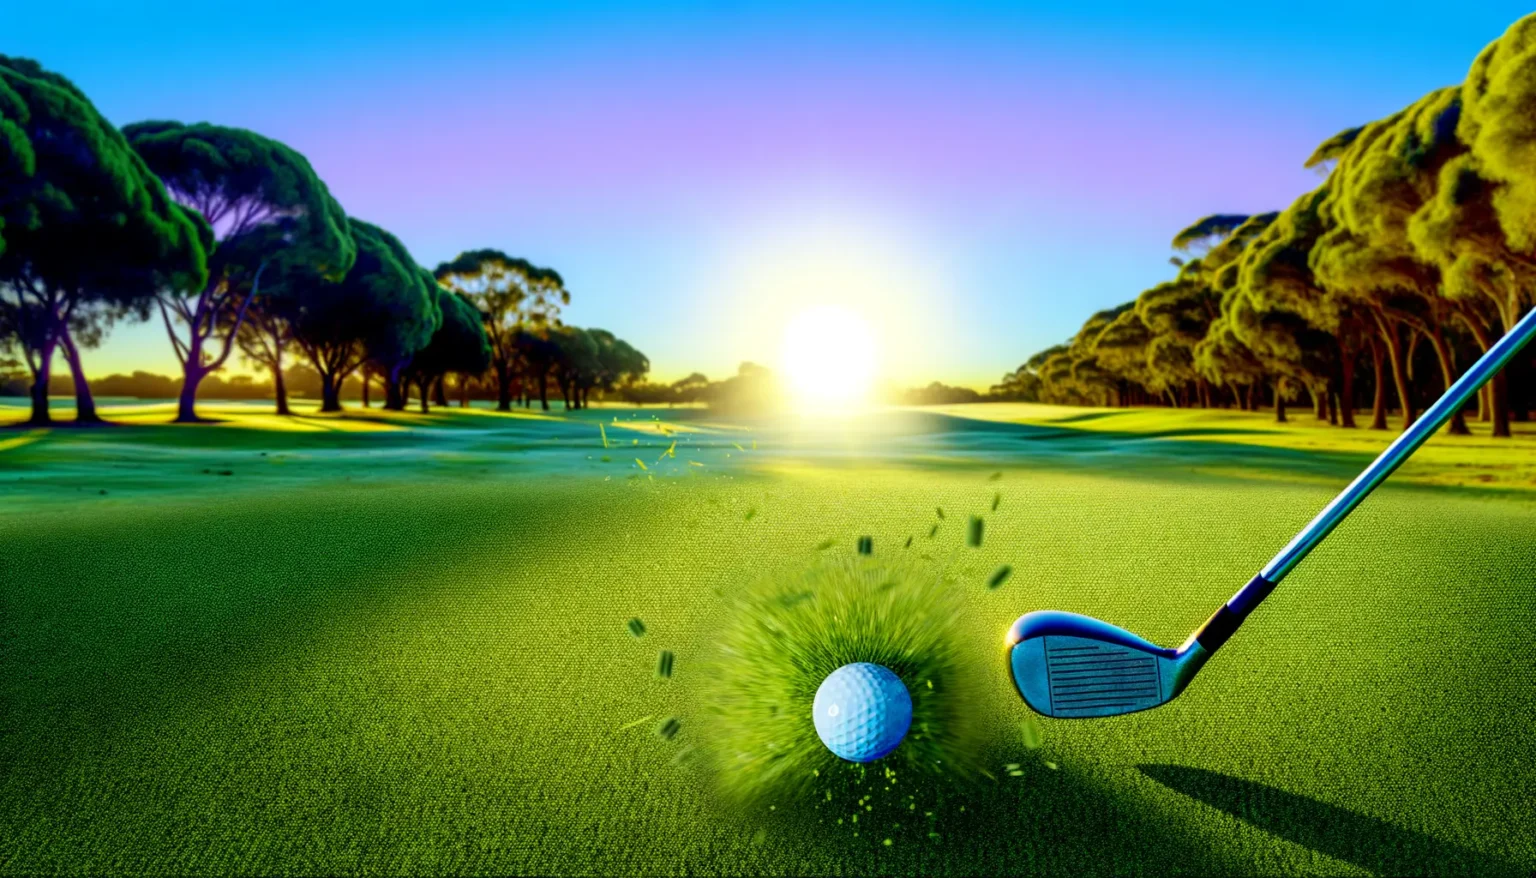 Ein Golfschläger trifft einen weißen Golfball auf einem Golfrasen; Grasstücke werden durch die Wucht des Schlages in die Luft geschleudert. Im Hintergrund sind Bäume und ein strahlend blauer Himmel mit aufgehender oder untergehender Sonne zu sehen.